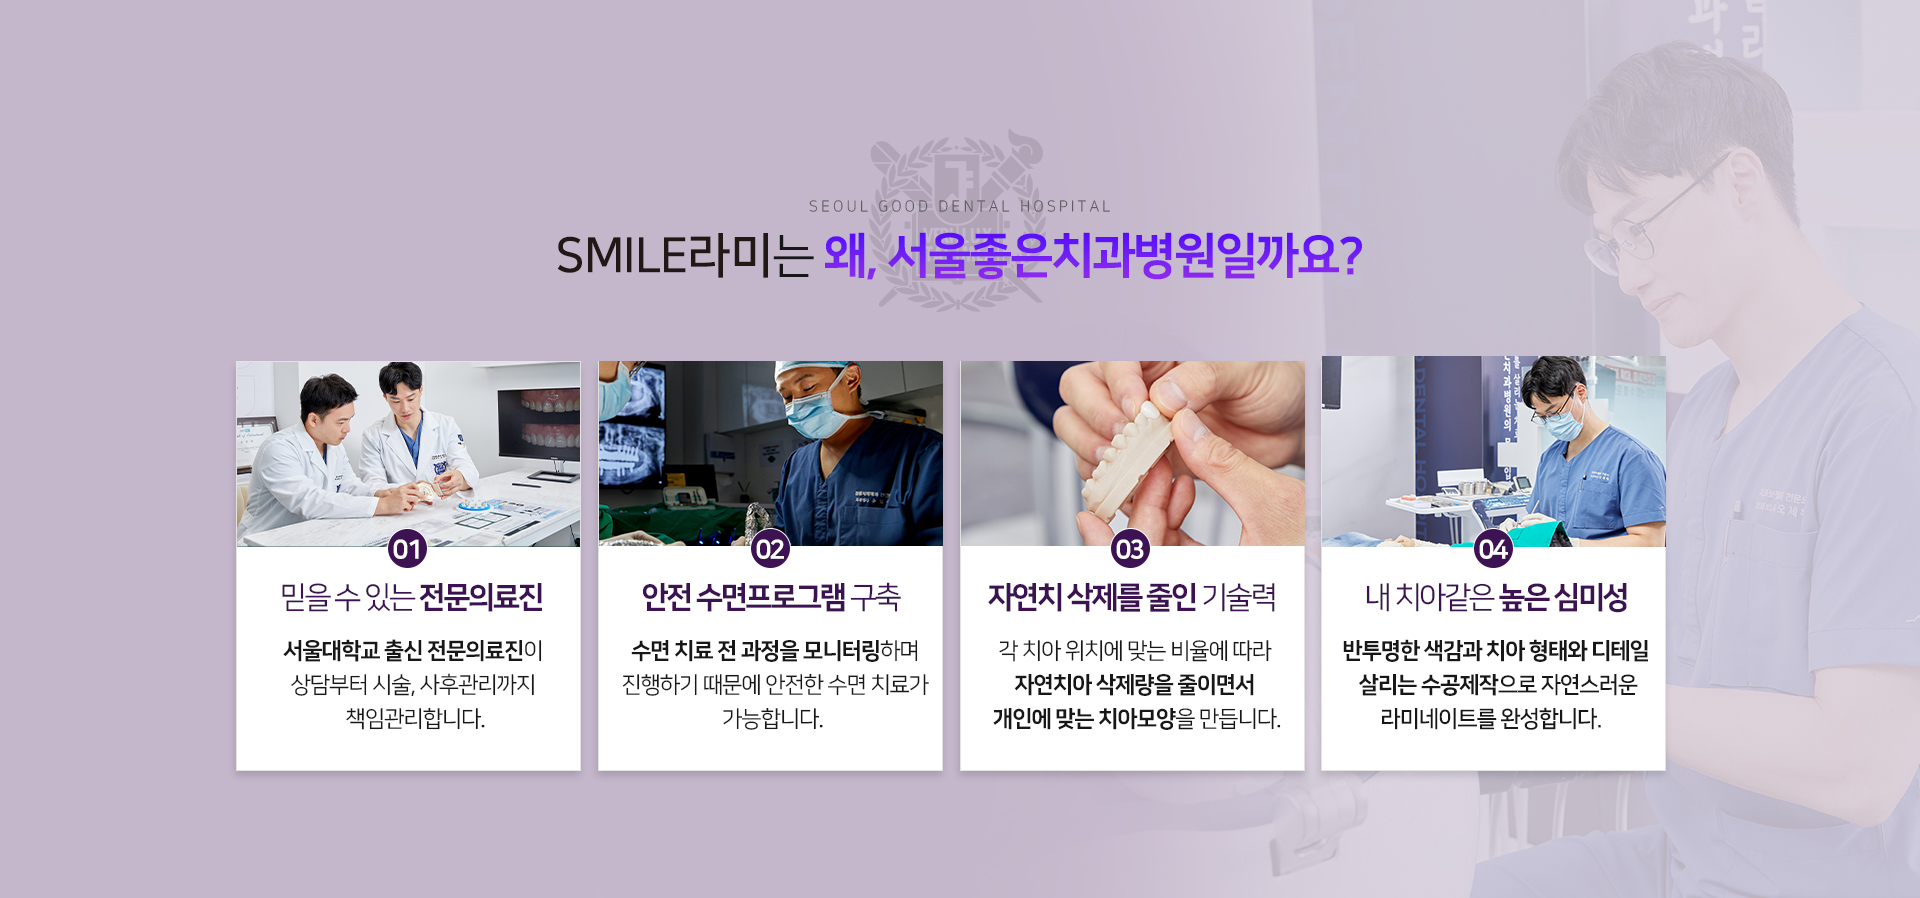 SMILE라미는-왜,서울좋은치과병원일까요?-믿을-수-있는-전문의료진-안전-수면프로그램-구축-자연치-삭제를-줄인-기술력-내-치아같은-높은-심미성